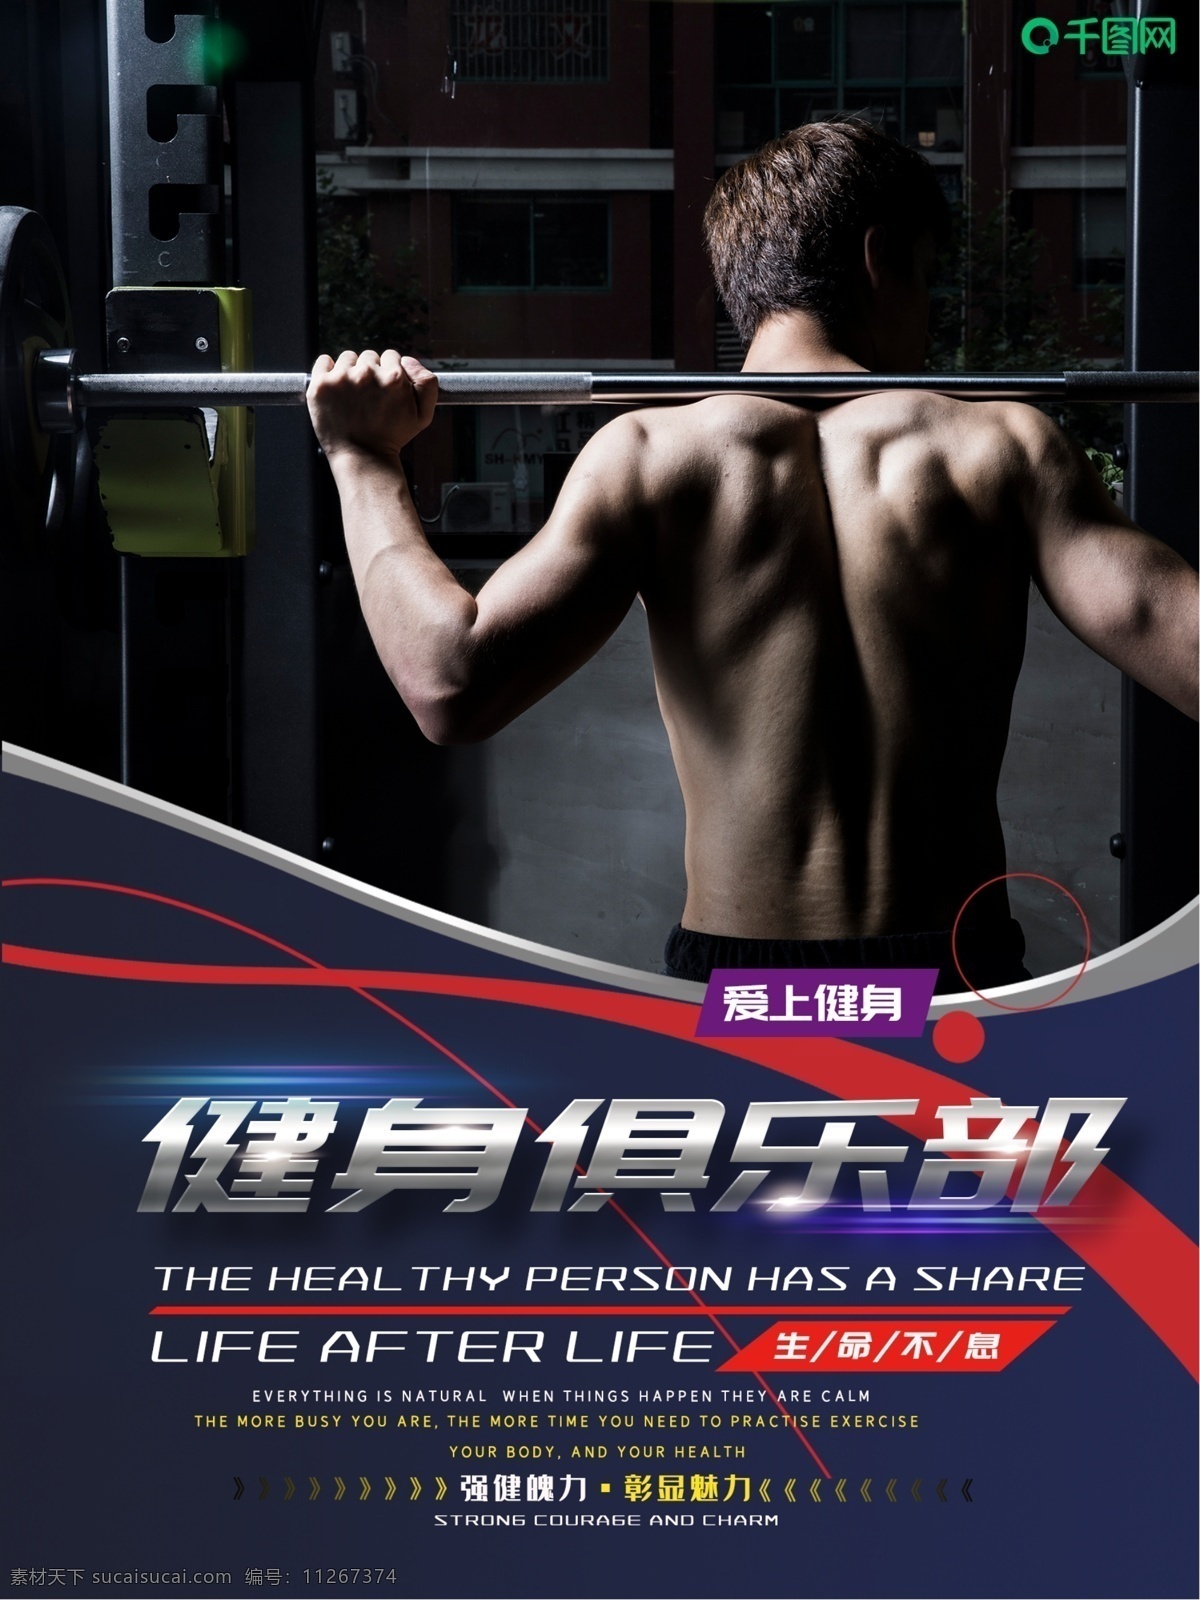 大气 健身 俱乐部 海报 运动 瘦身 身材 体形 私教 教练 肌肉 健身房 健身俱乐部